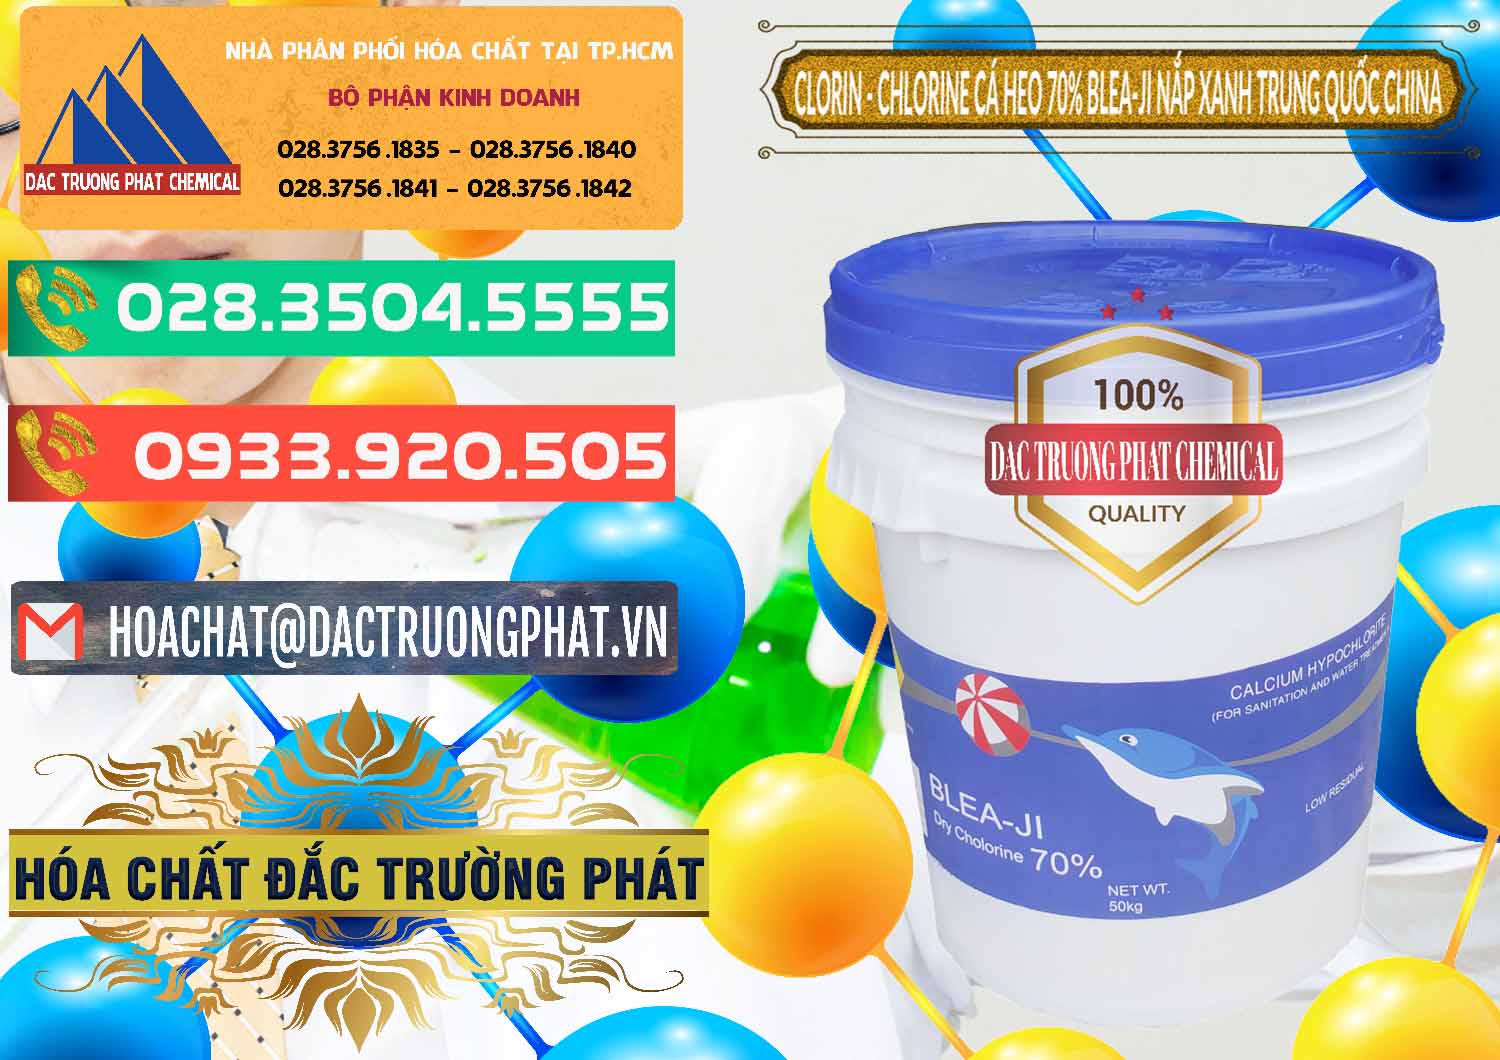 Chuyên bán ( cung cấp ) Clorin - Chlorine Cá Heo 70% Cá Heo Blea-Ji Thùng Tròn Nắp Xanh Trung Quốc China - 0208 - Phân phối _ cung cấp hóa chất tại TP.HCM - congtyhoachat.com.vn